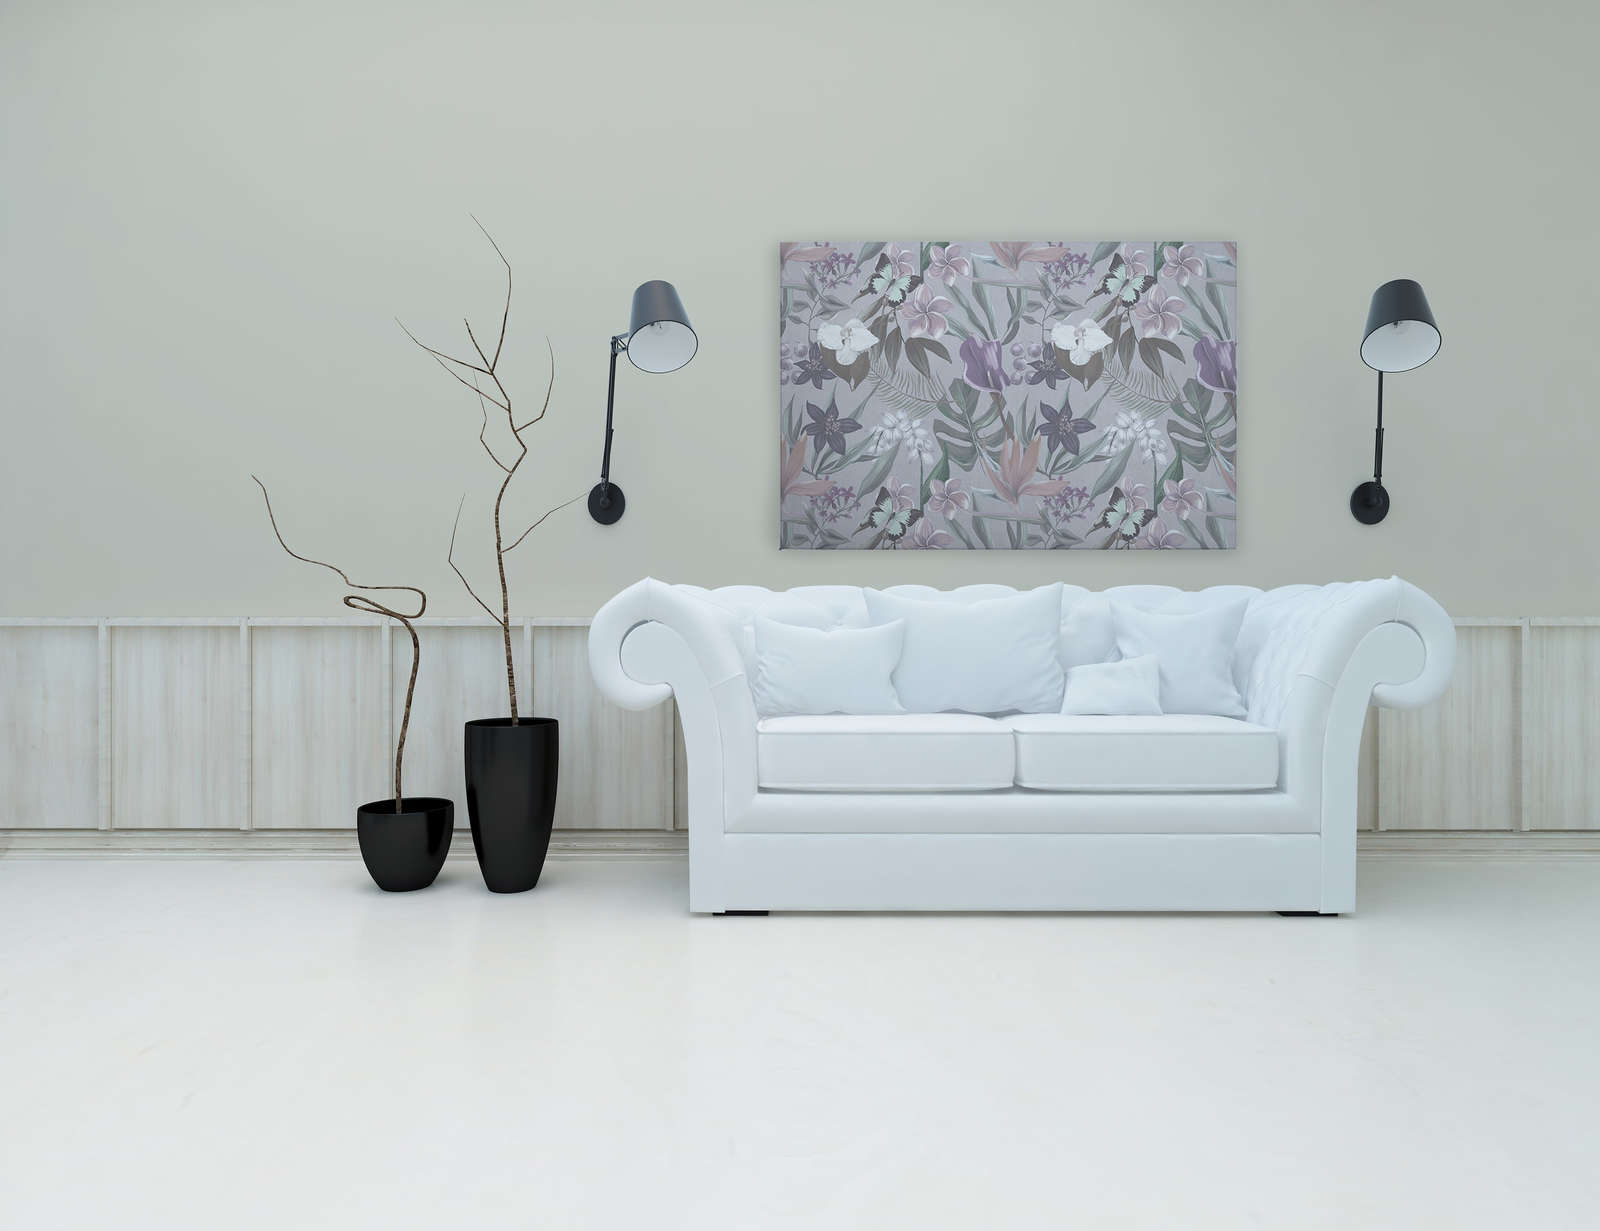             Toile florale jungle dessinée | rose, blanc - 1,20 m x 0,80 m
        